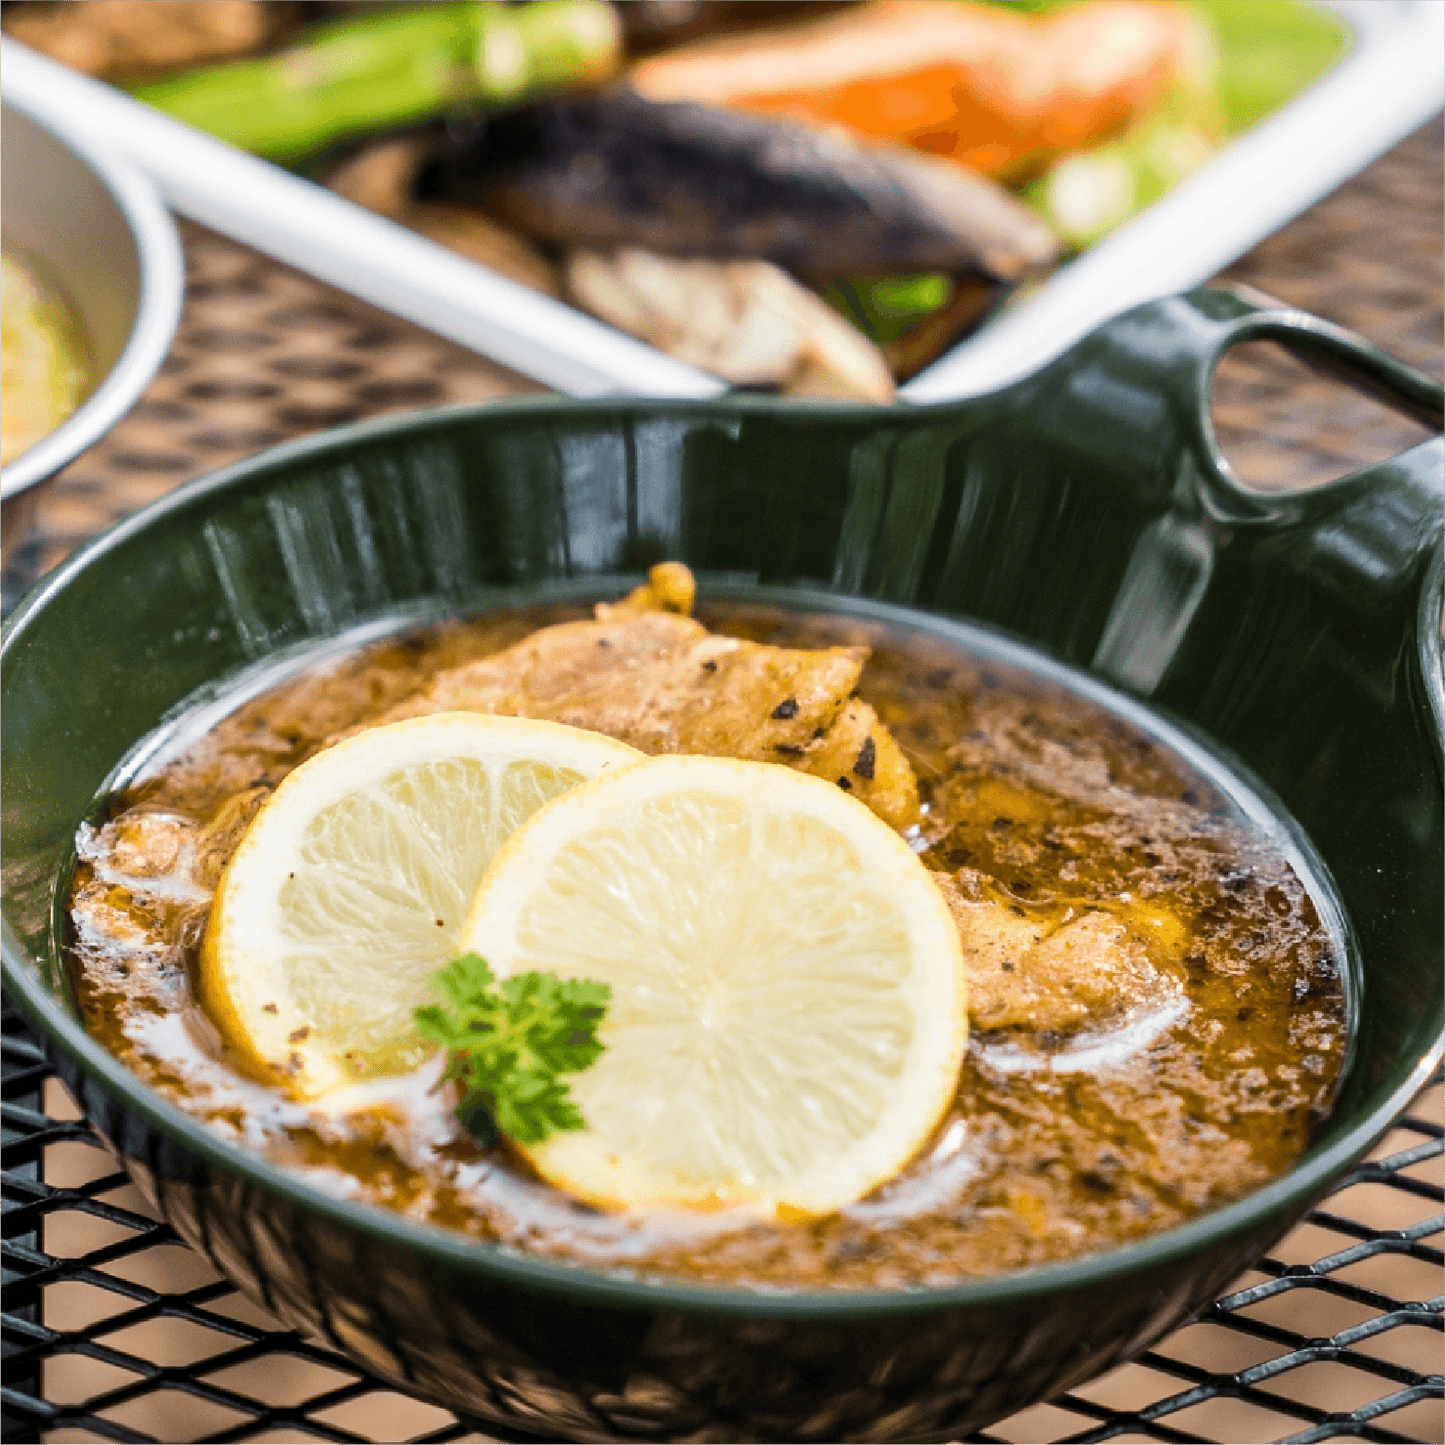 シチリアレモンスープカリー［辛みゼロ］ l 冷凍  Soup Curry